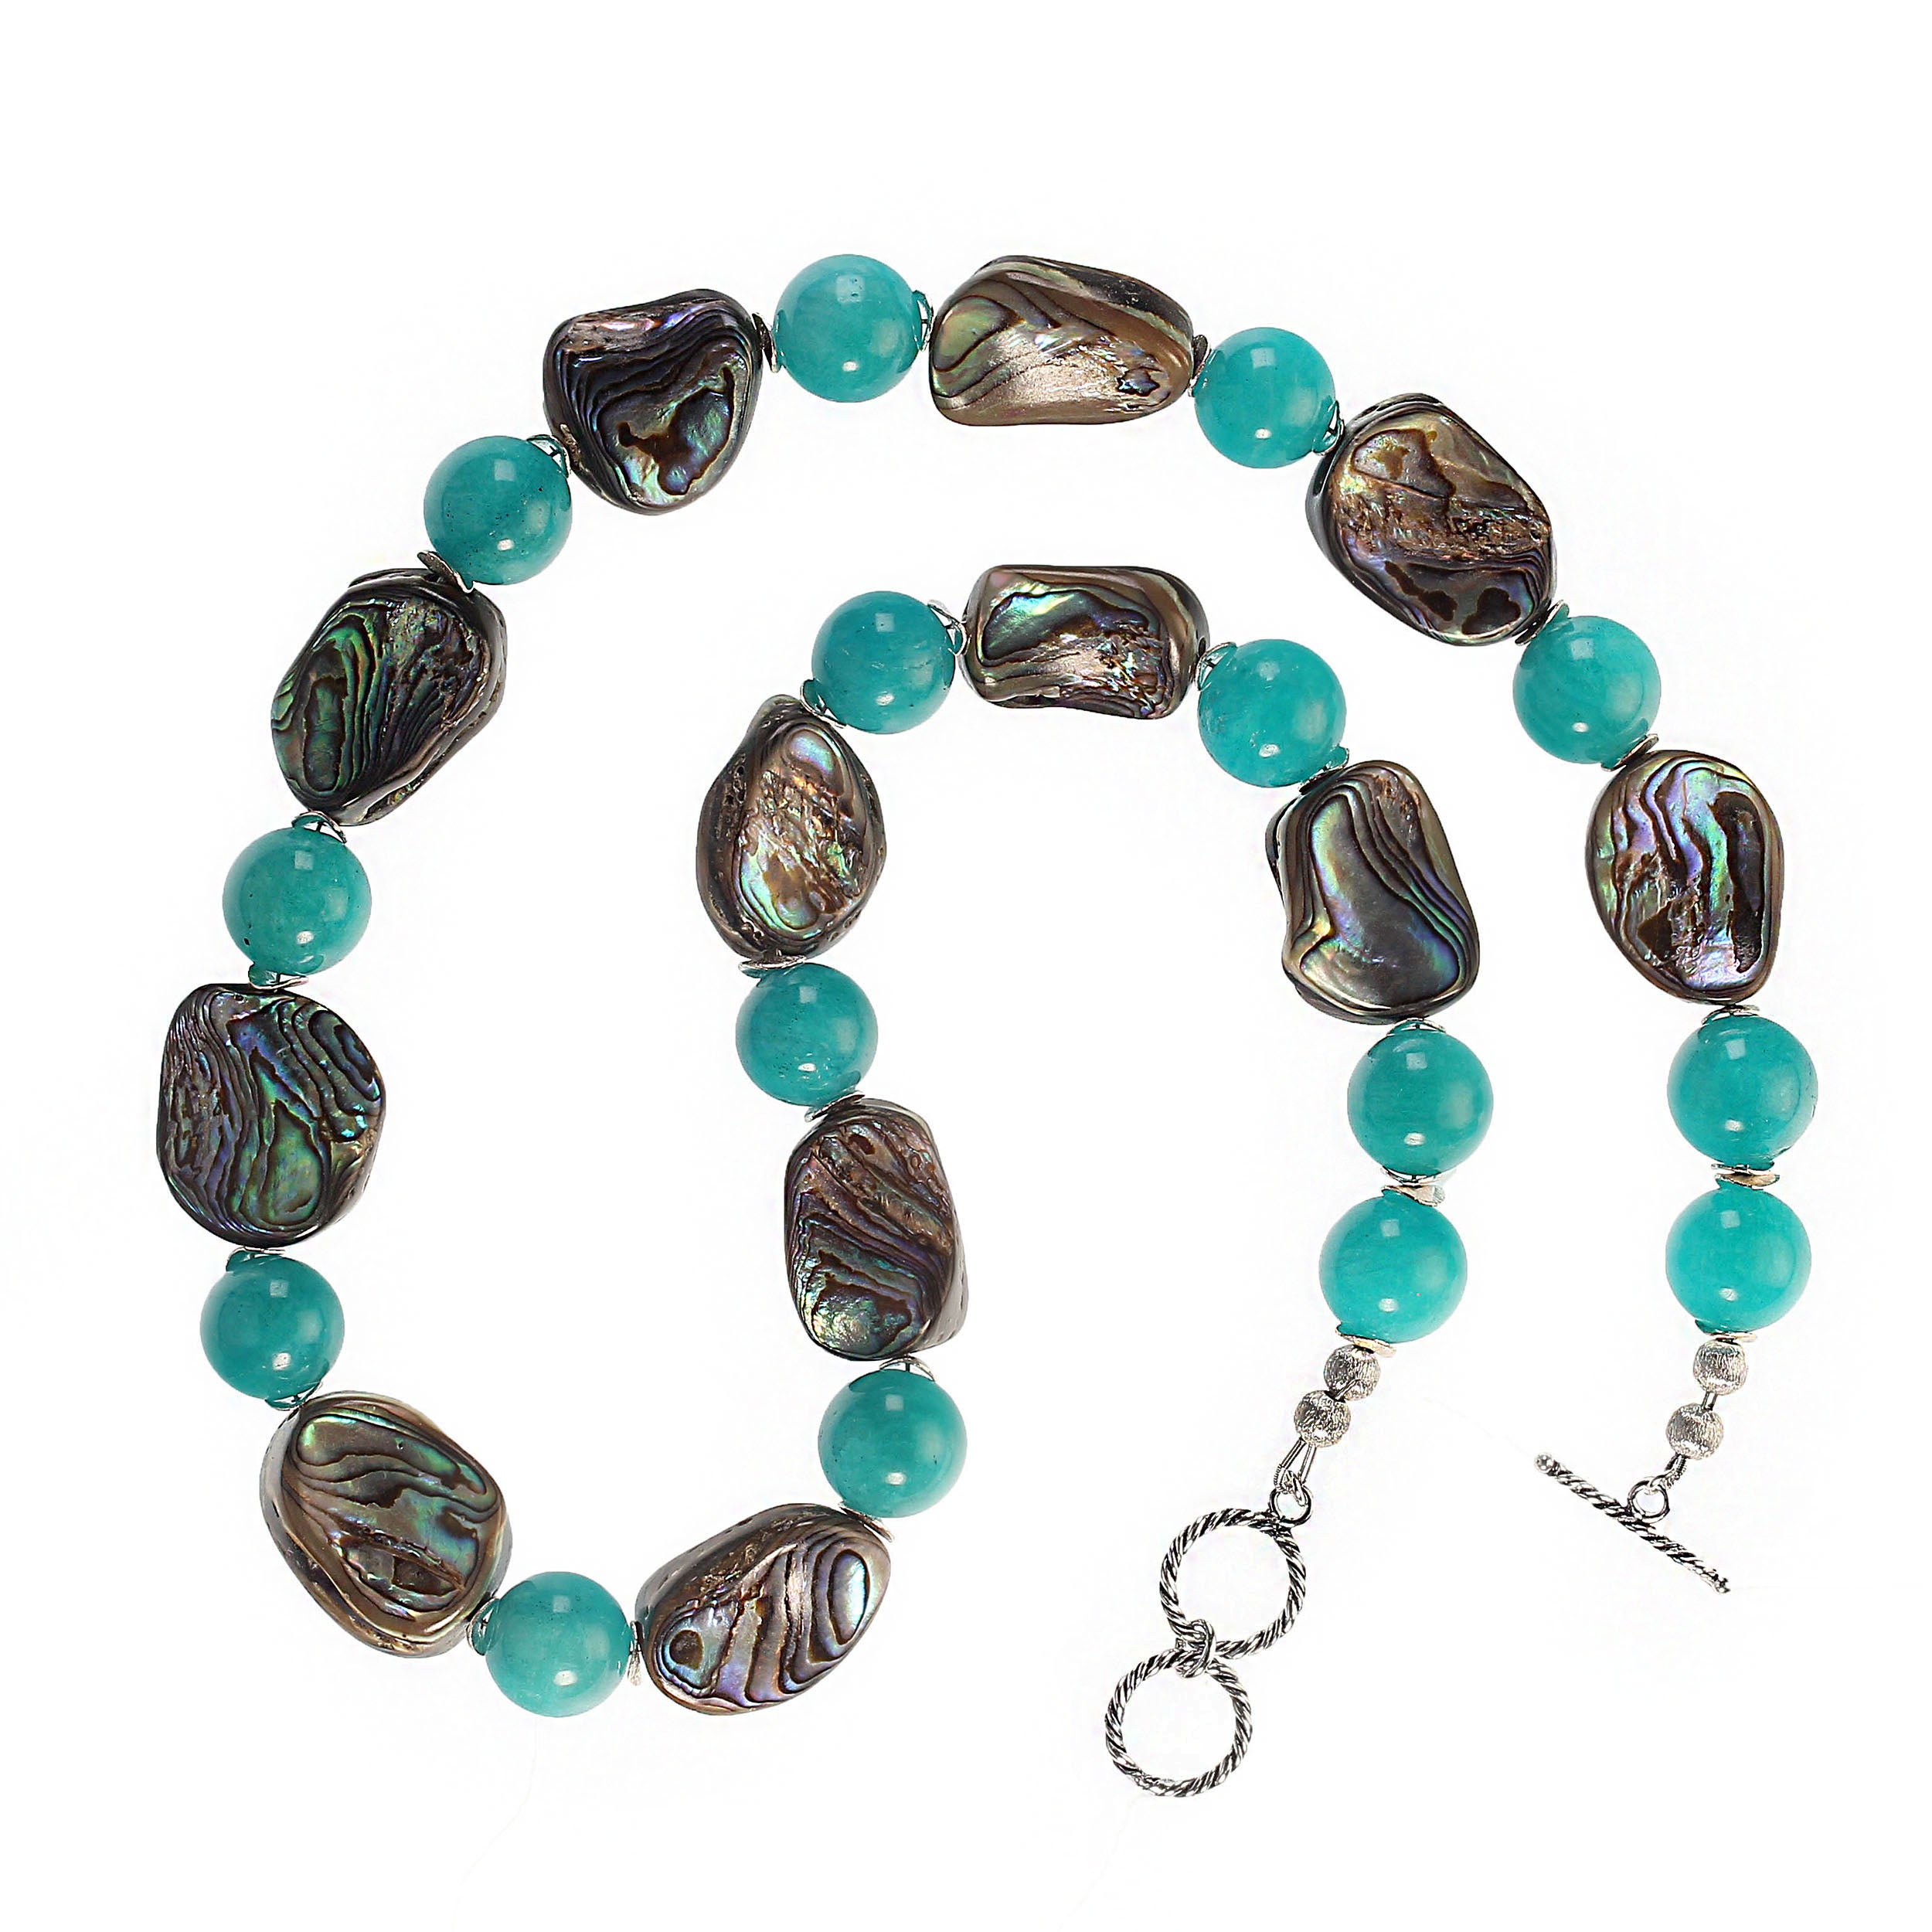 23-Zoll schillernde doppelseitige Halskette aus Abalone und rekonstituiertem Amazonit.  Diese perfekte Frühlingskette ist in einem schönen türkisfarbenen Blau-Grün und einem schillernden Blau/Grün/Lila gehalten. Silberfarbene Flitter akzentuieren